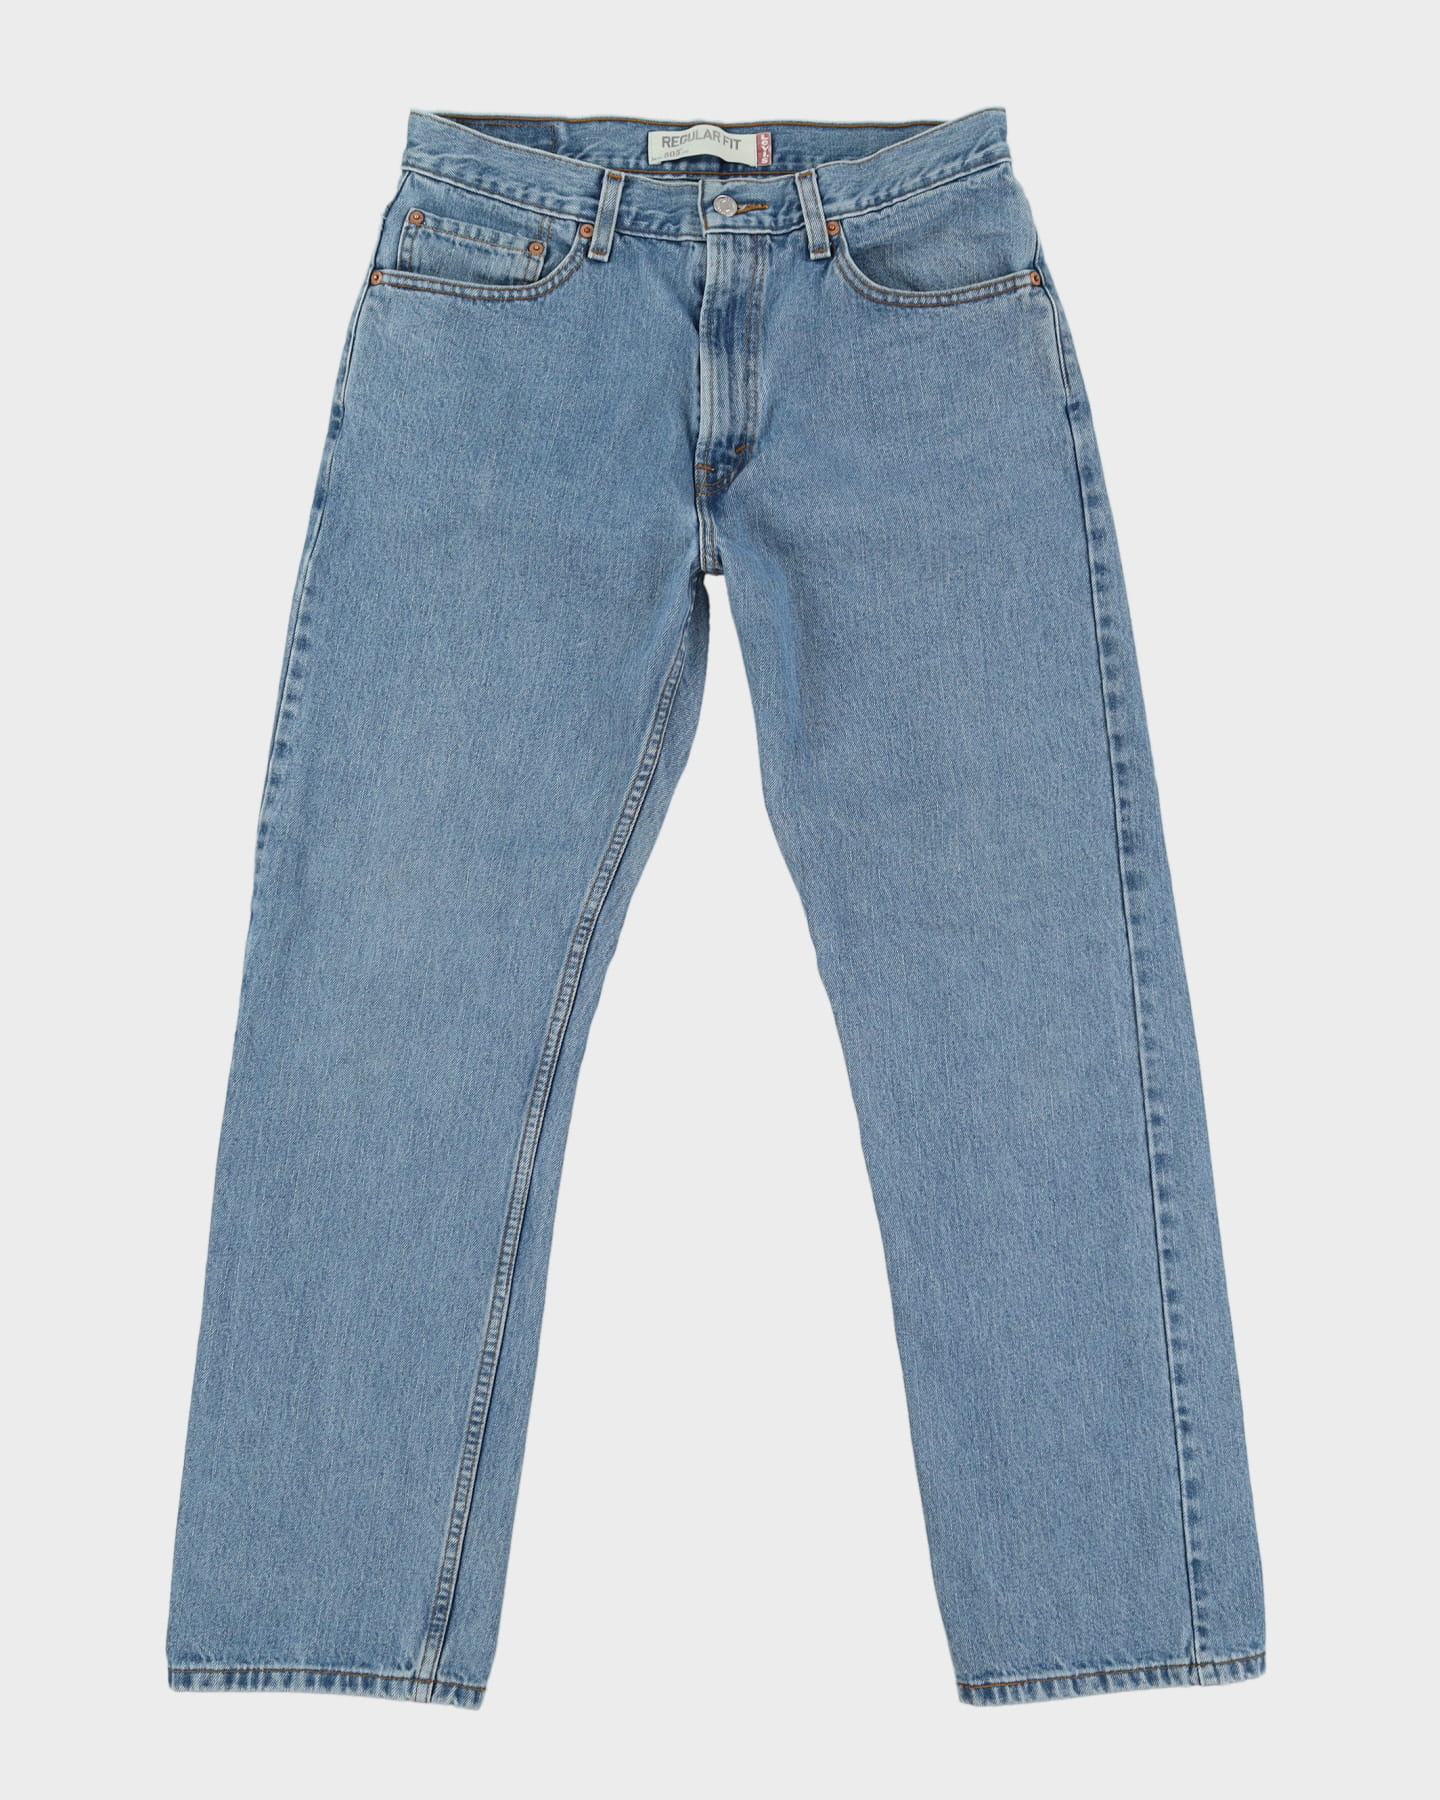 00s Levi's 505 Blue Jeans - W32 L31